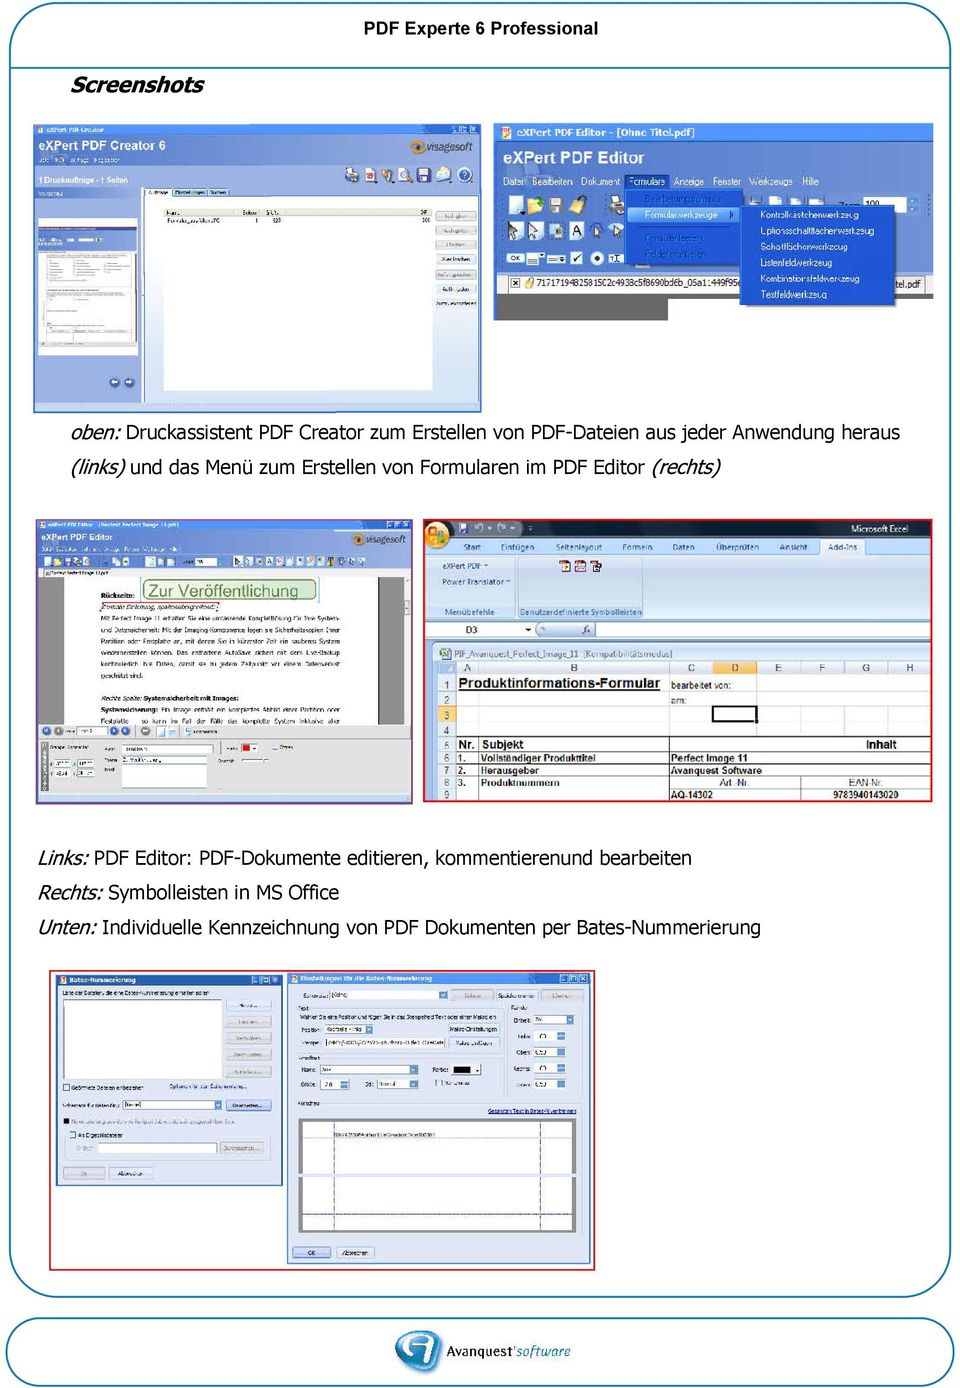 PDF Editor: PDF-Dokumente editieren, kommentierenund bearbeiten